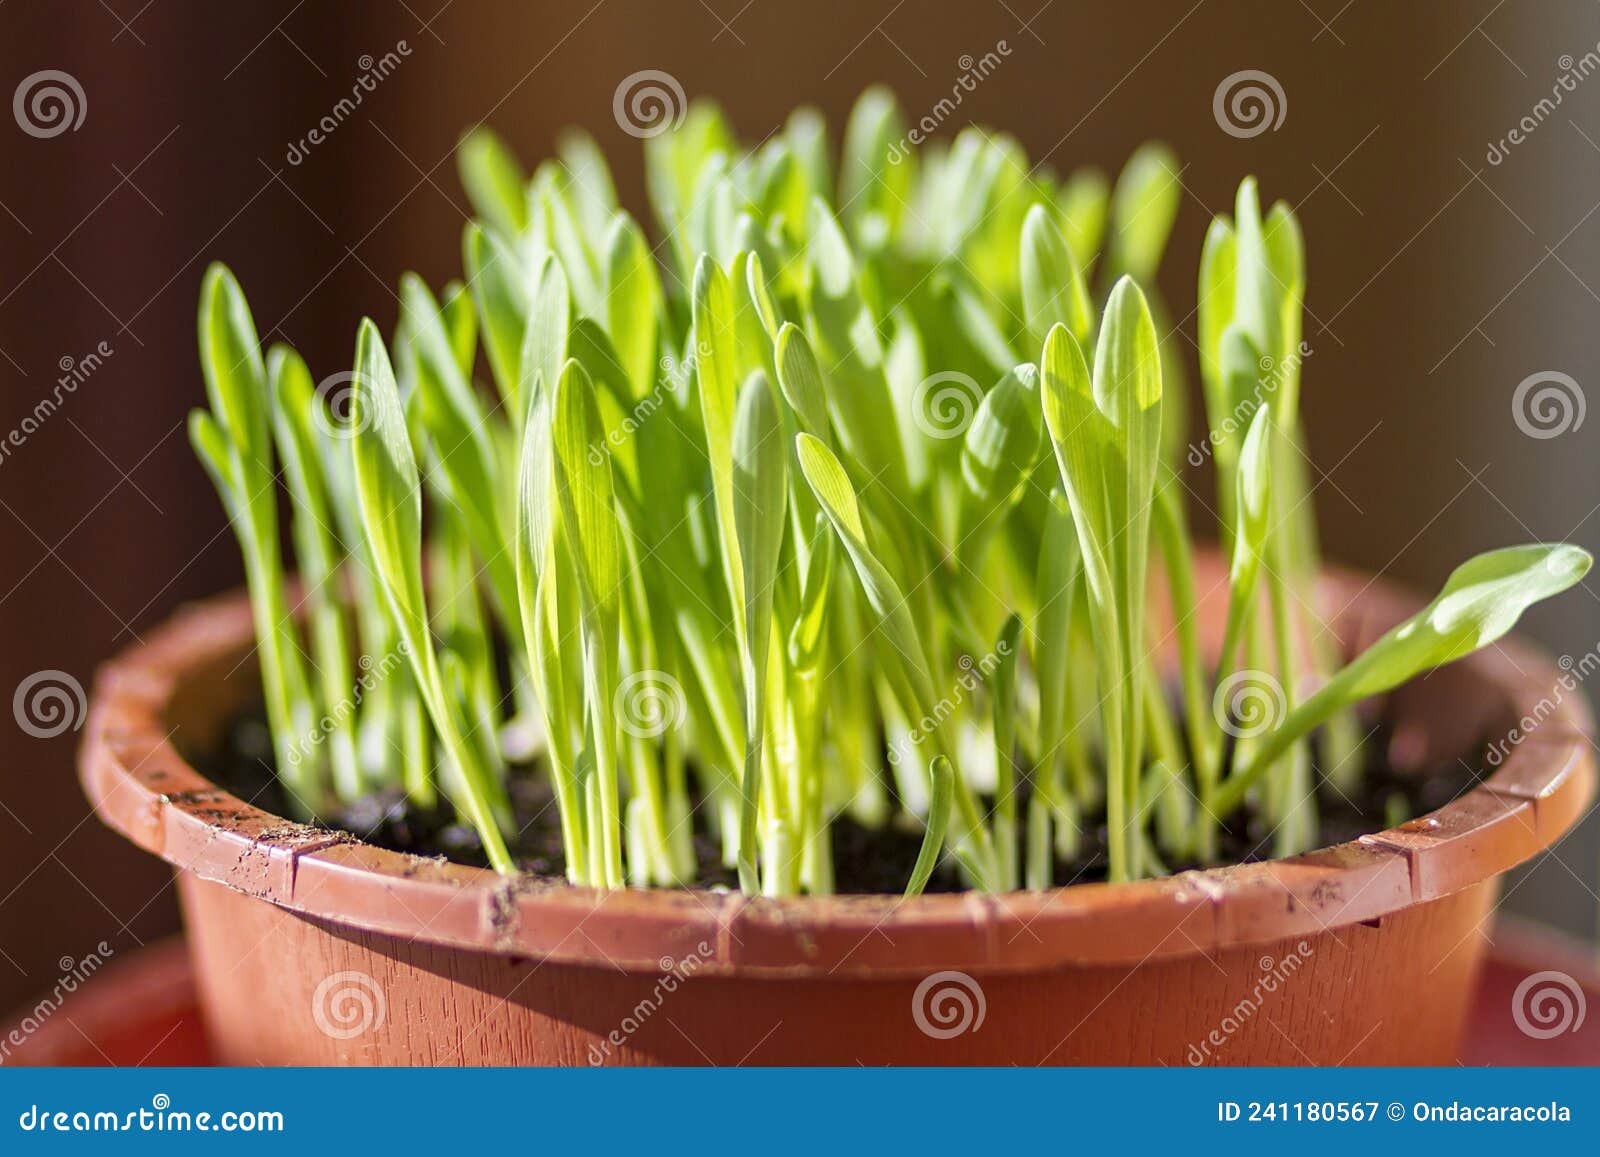 a pot of fresh cat grass